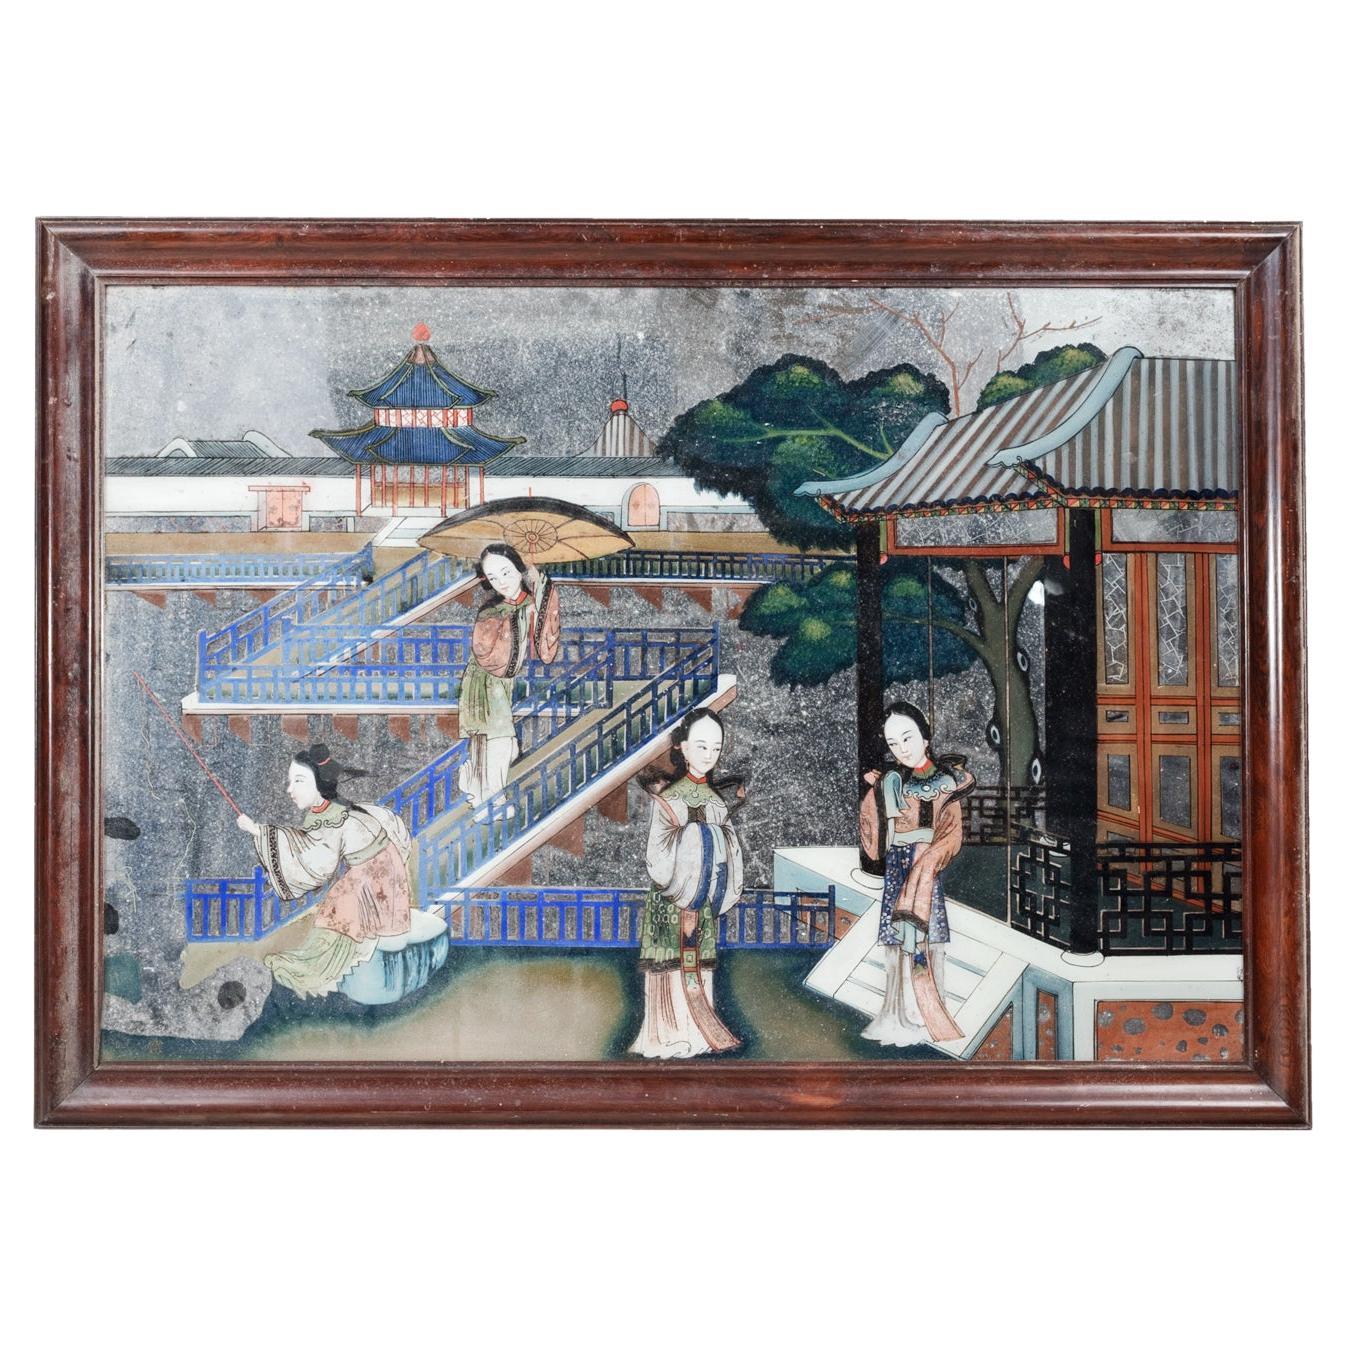 Chinesischer Spiegel des 19. Jahrhunderts mit Umkehrmalerei, der eine Gerichtsszene darstellt